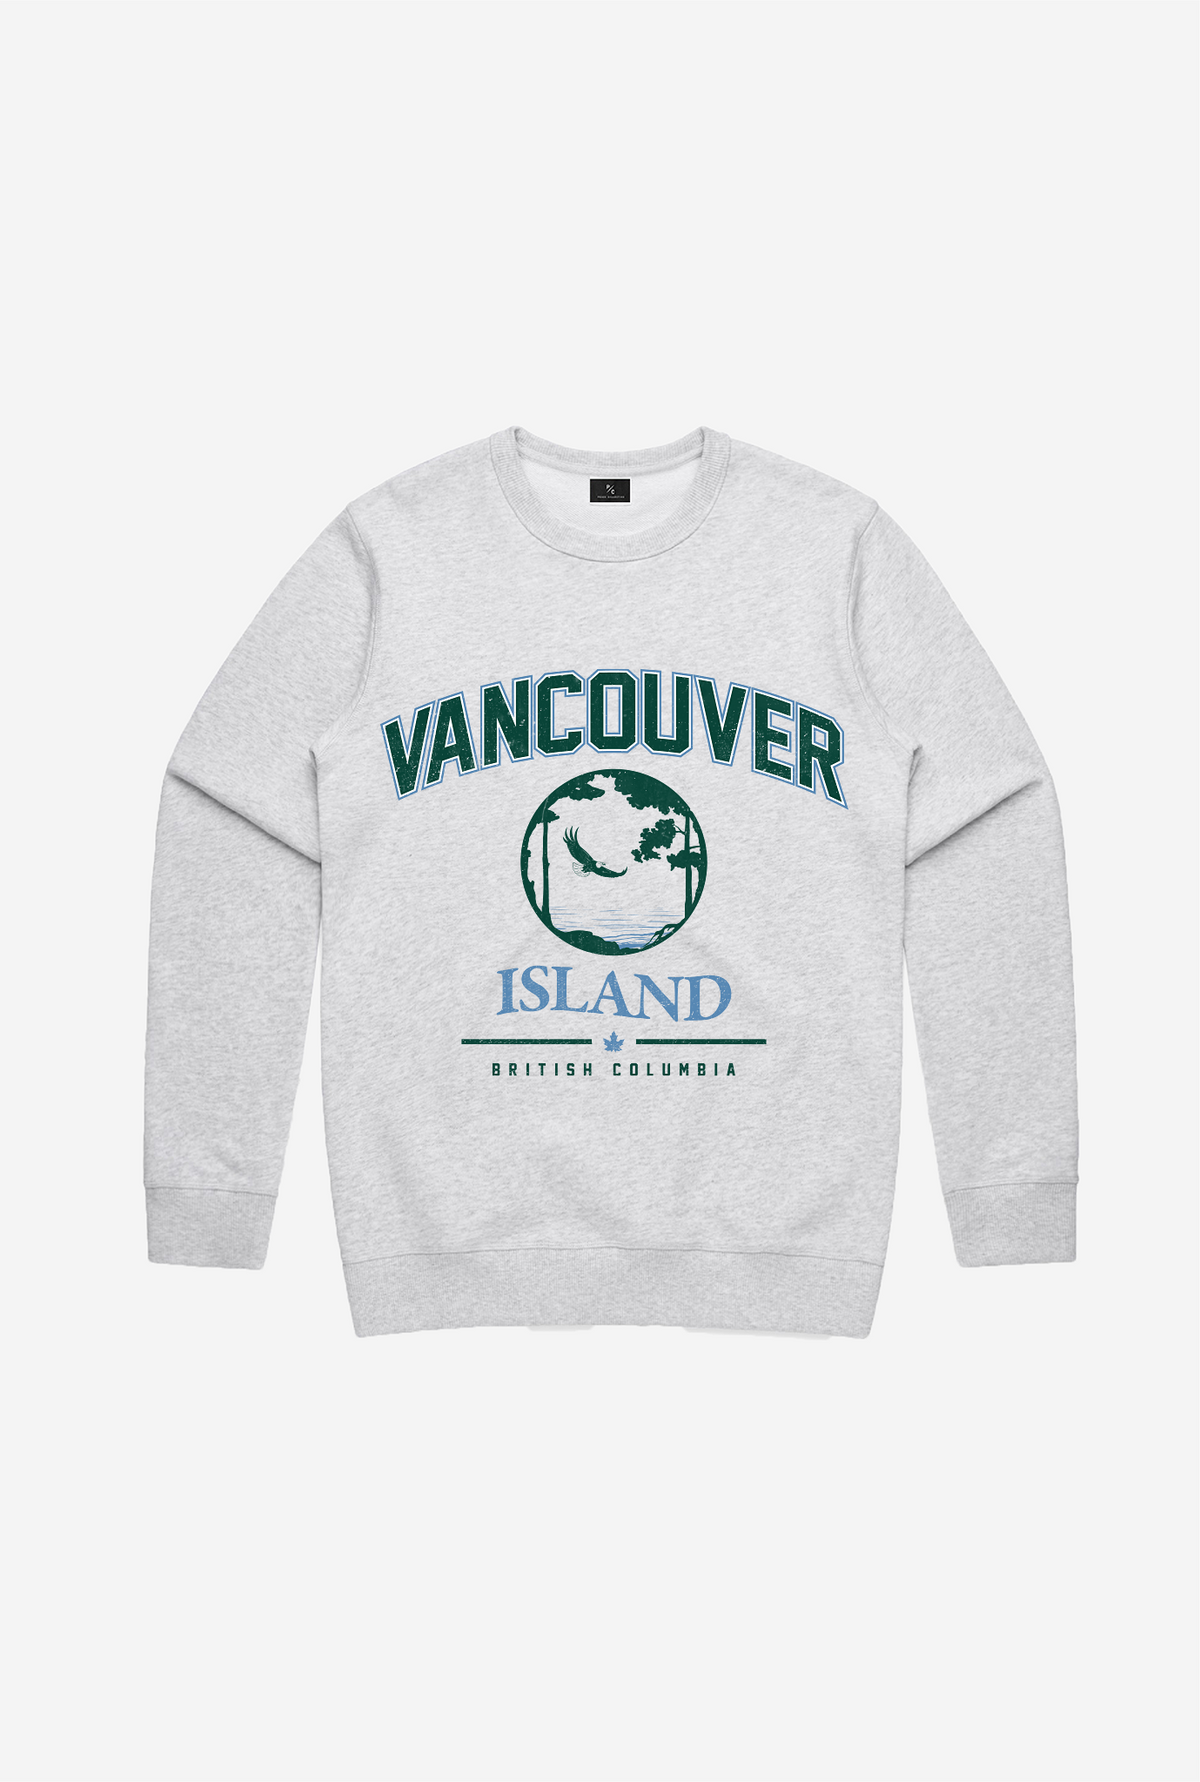 Vancouver Island Vintage Crewneck - Grey